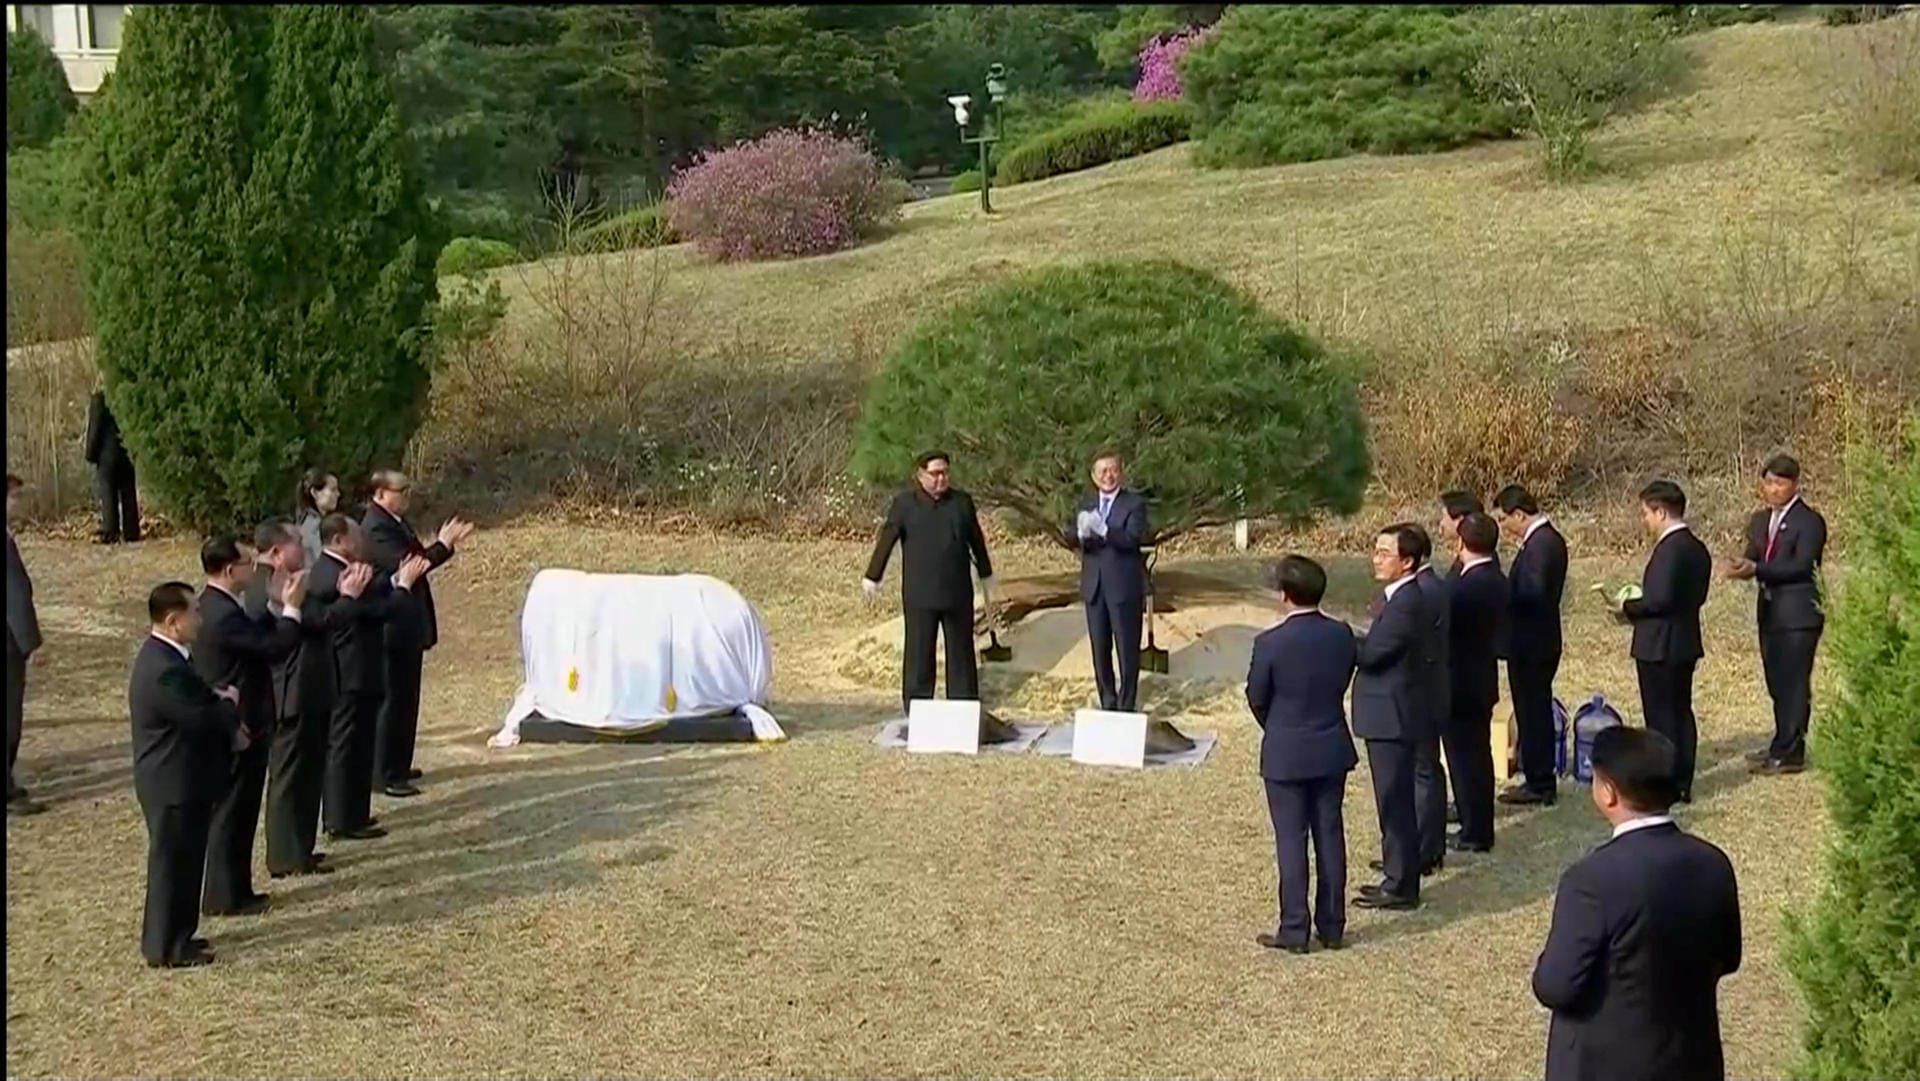 Kim und Moon enthüllten zudem eine Steinplatte neben dem Baum, auf dem die Botschaft "Frieden und Wohlstand sind gepflanzt" zu lesen war.